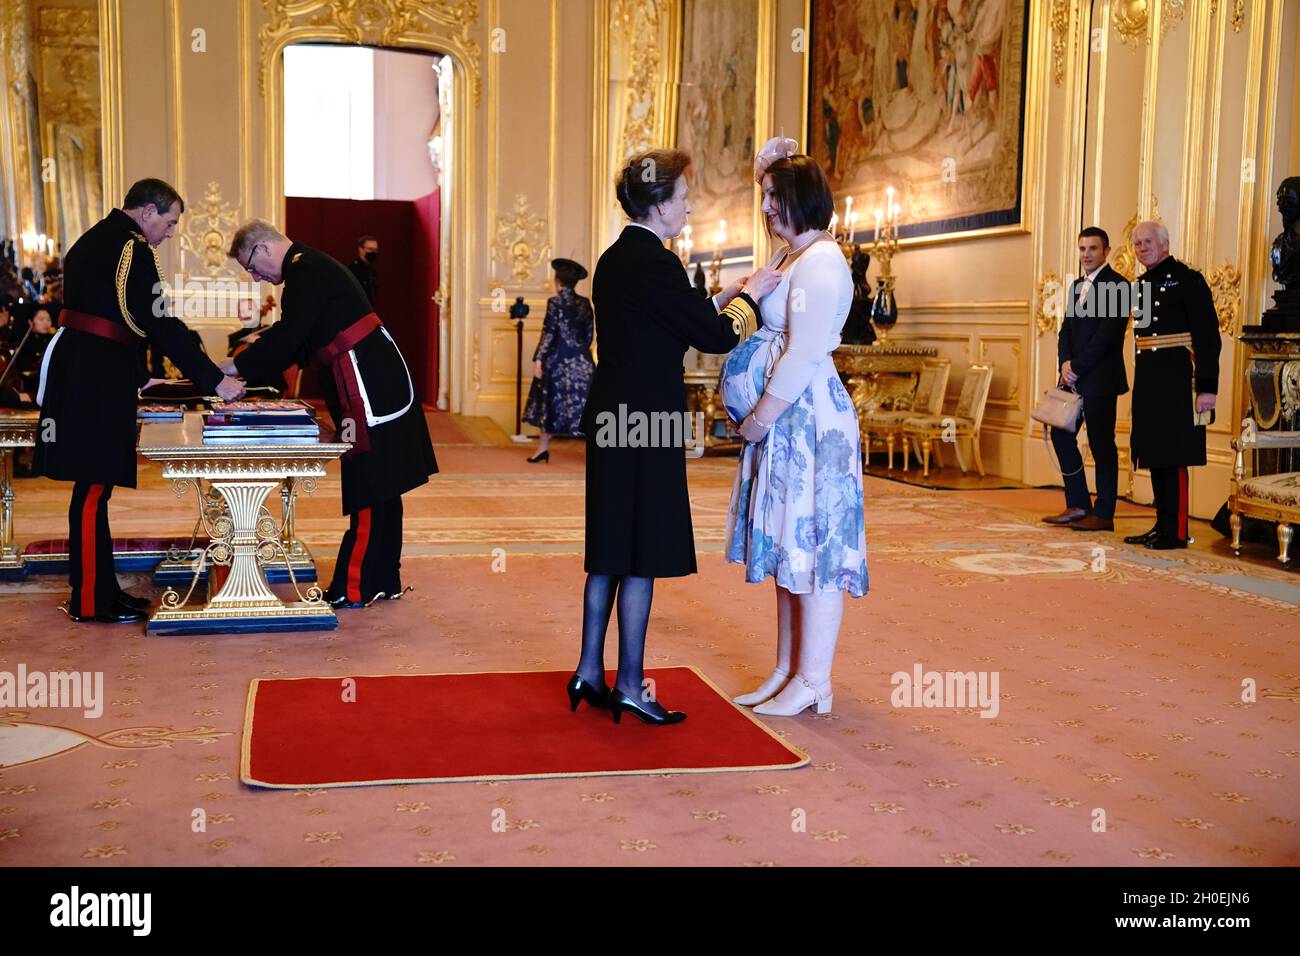 Mme Ashleigh Linsdell, de Peterborough, est faite OBE (Officier de l'ordre de l'Empire britannique) par la princesse Royal au château de Windsor.Date de la photo: Mardi 12 octobre 2021. Banque D'Images